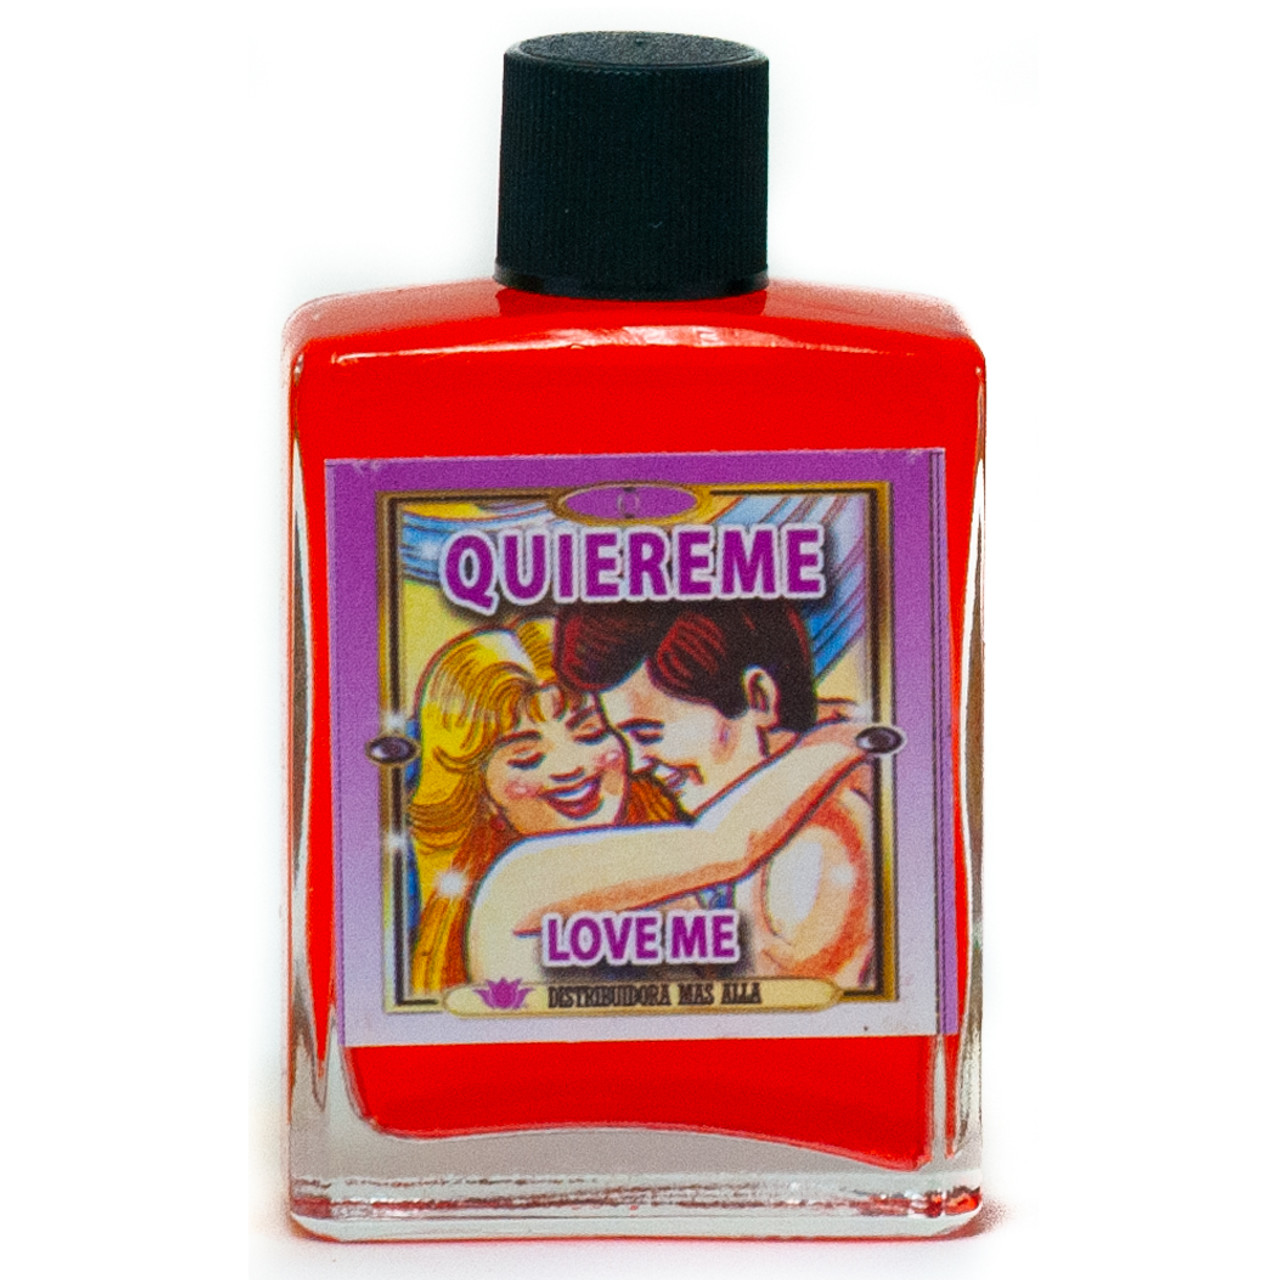 Quiereme - Love Me  Esoteric Perfume -